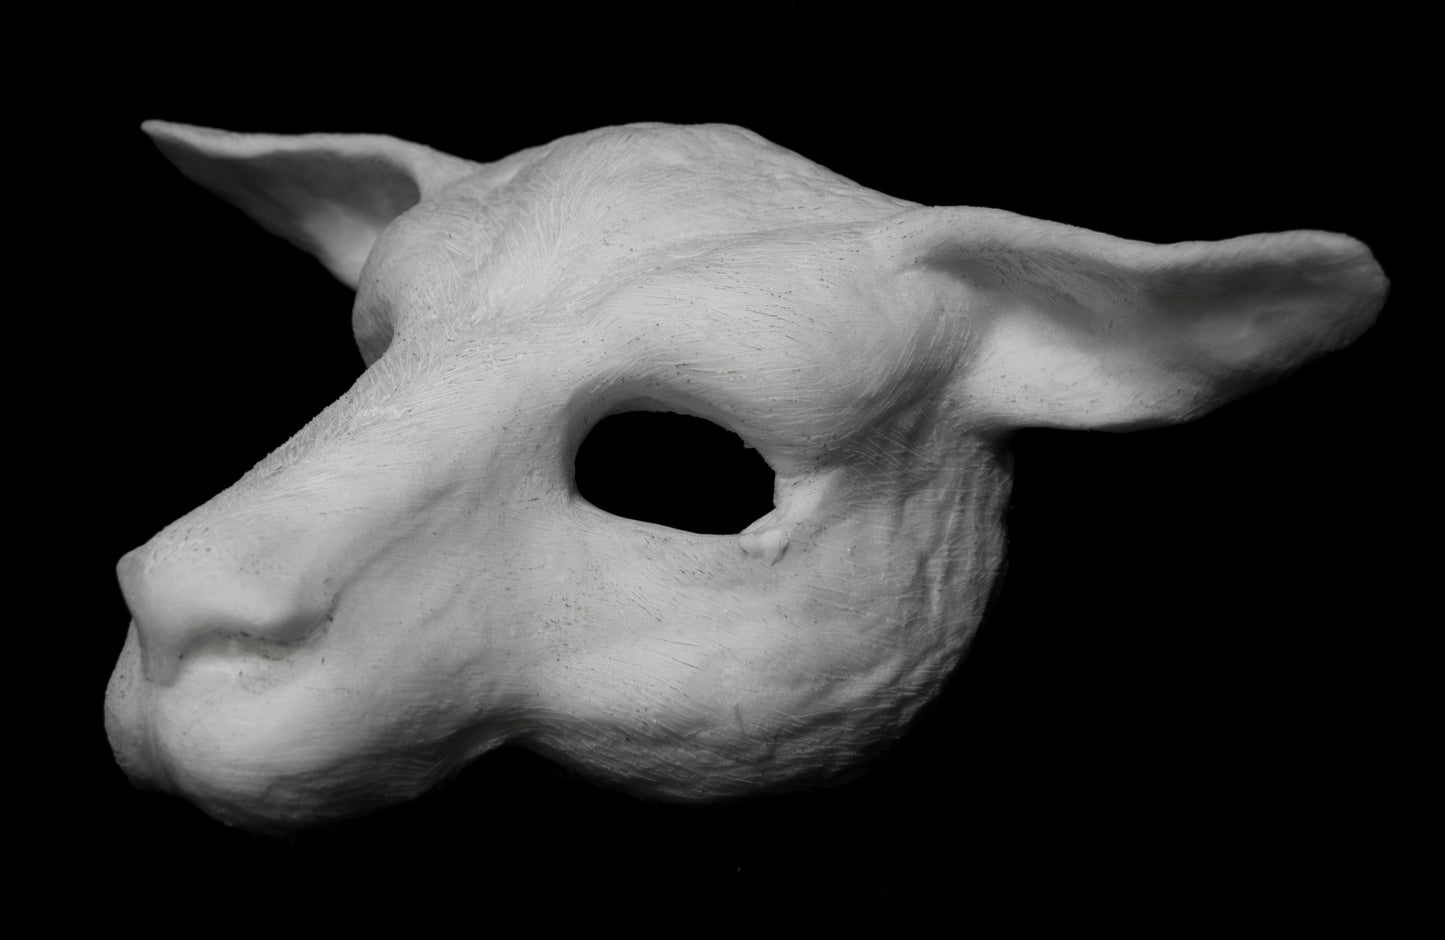 Goat / Sheep Mask for LARP, soft foam for safe combat